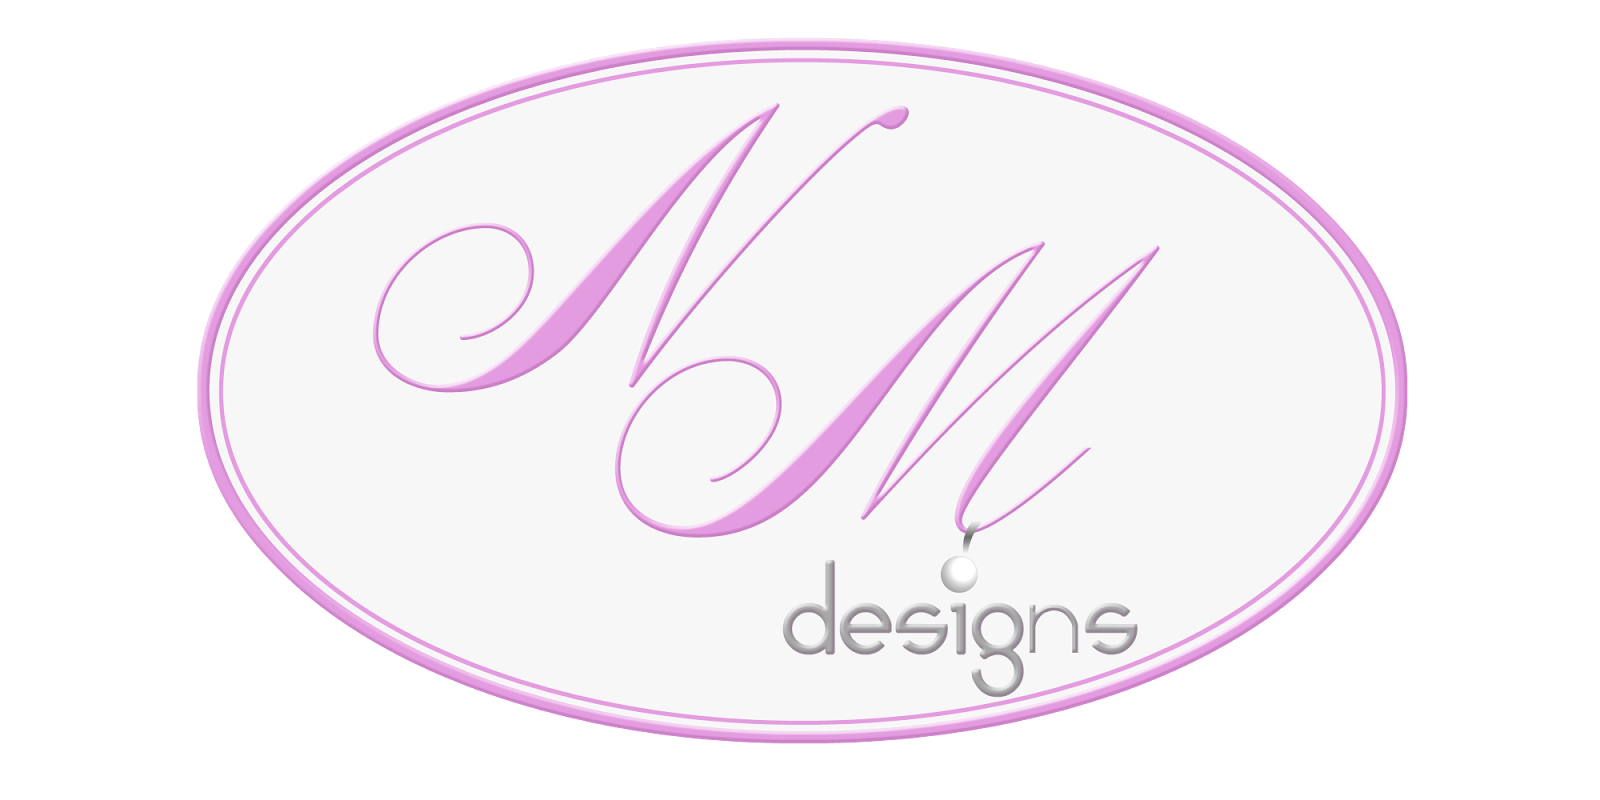 NM Designs